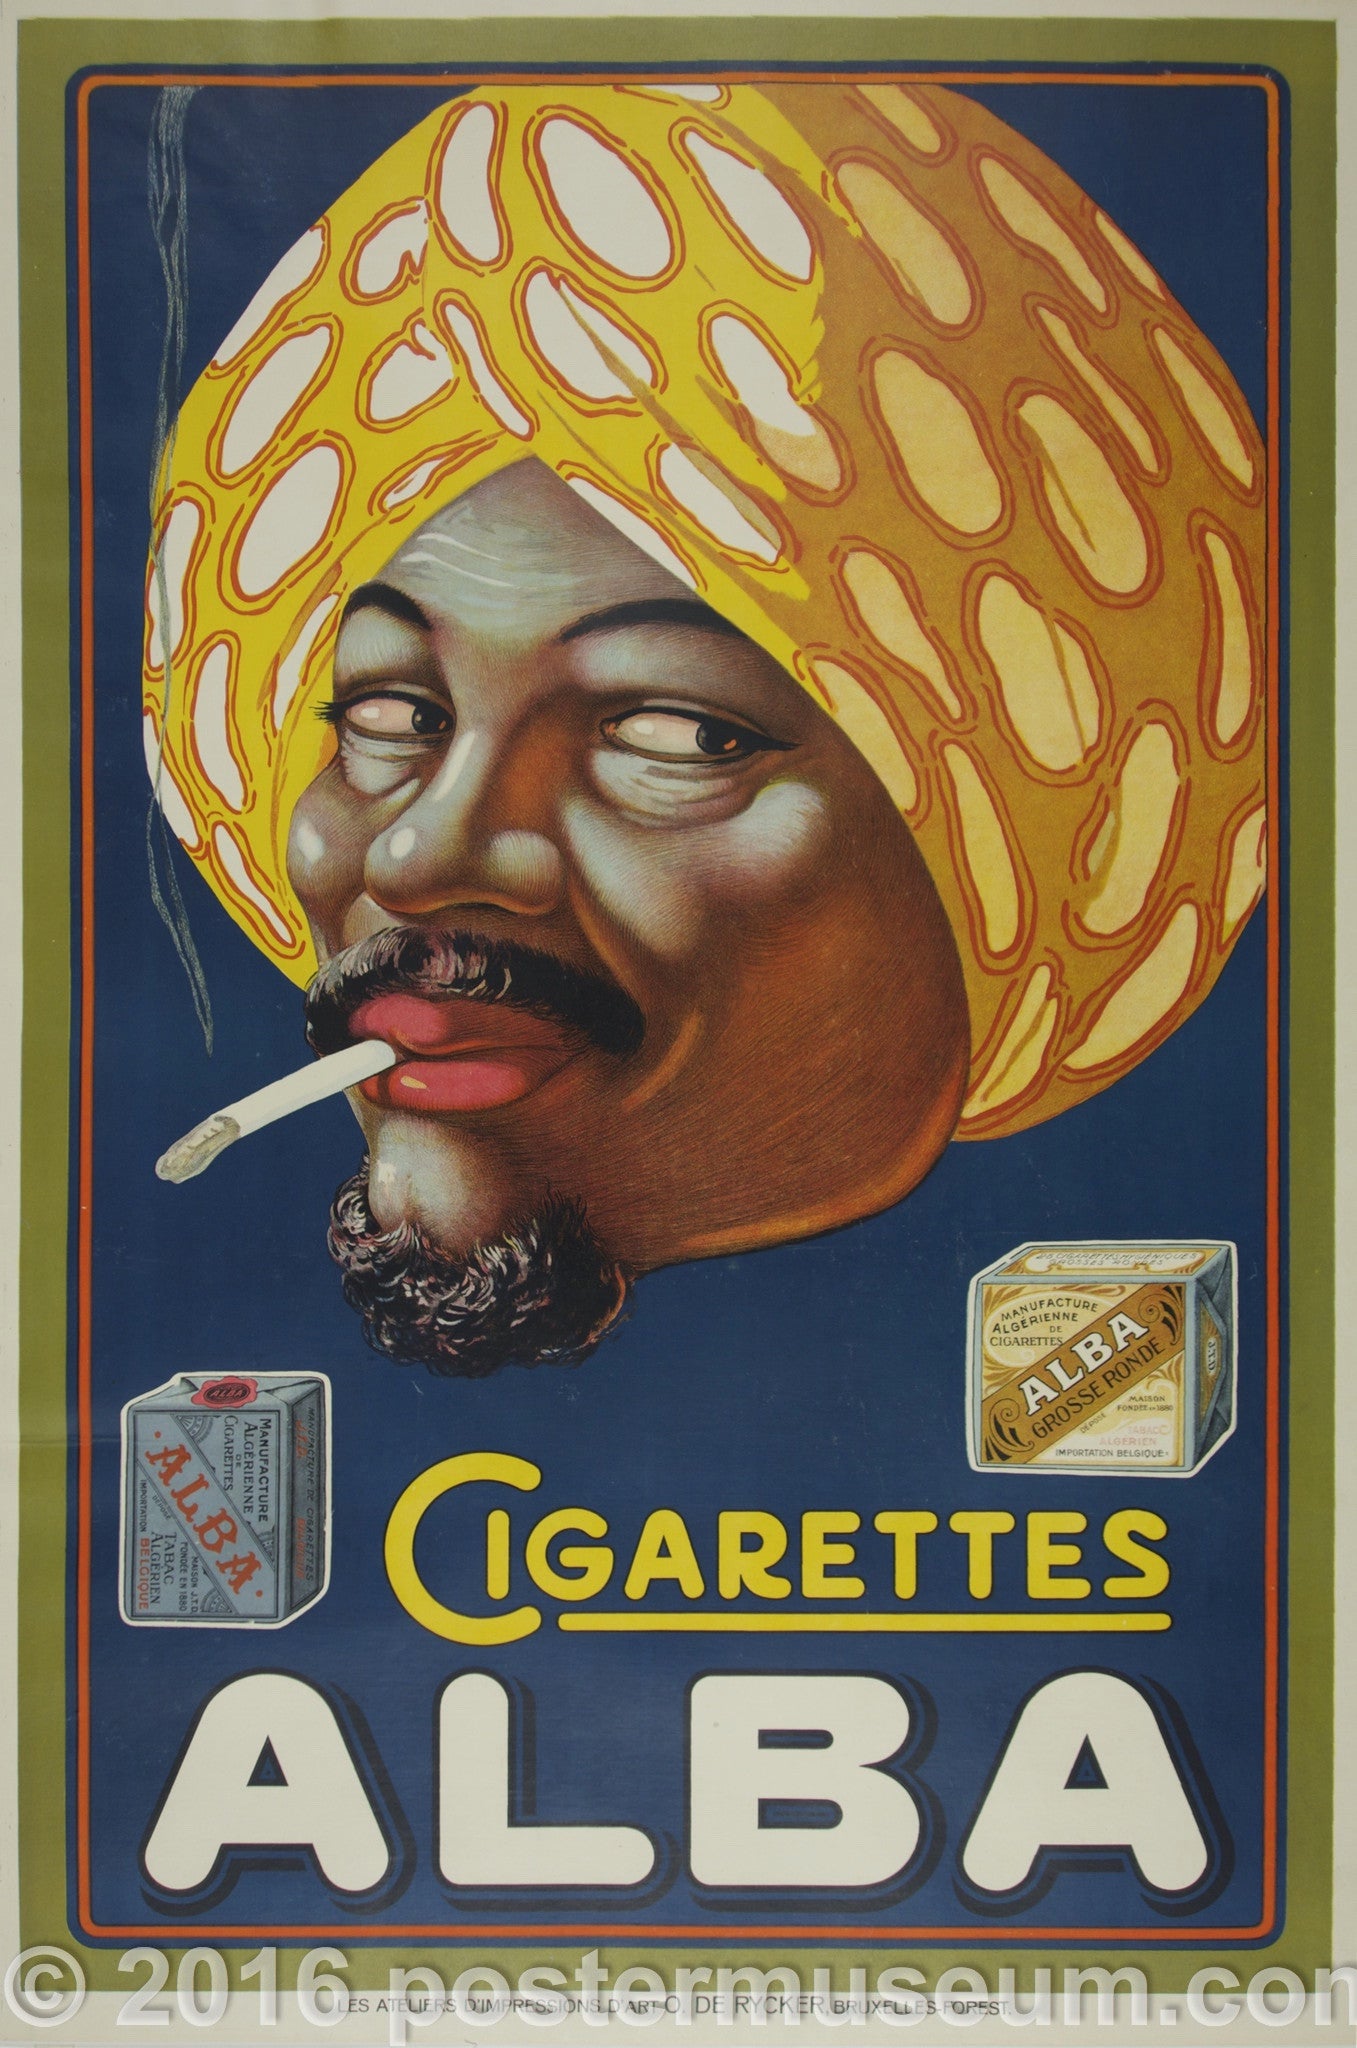 Alba Cigarettes